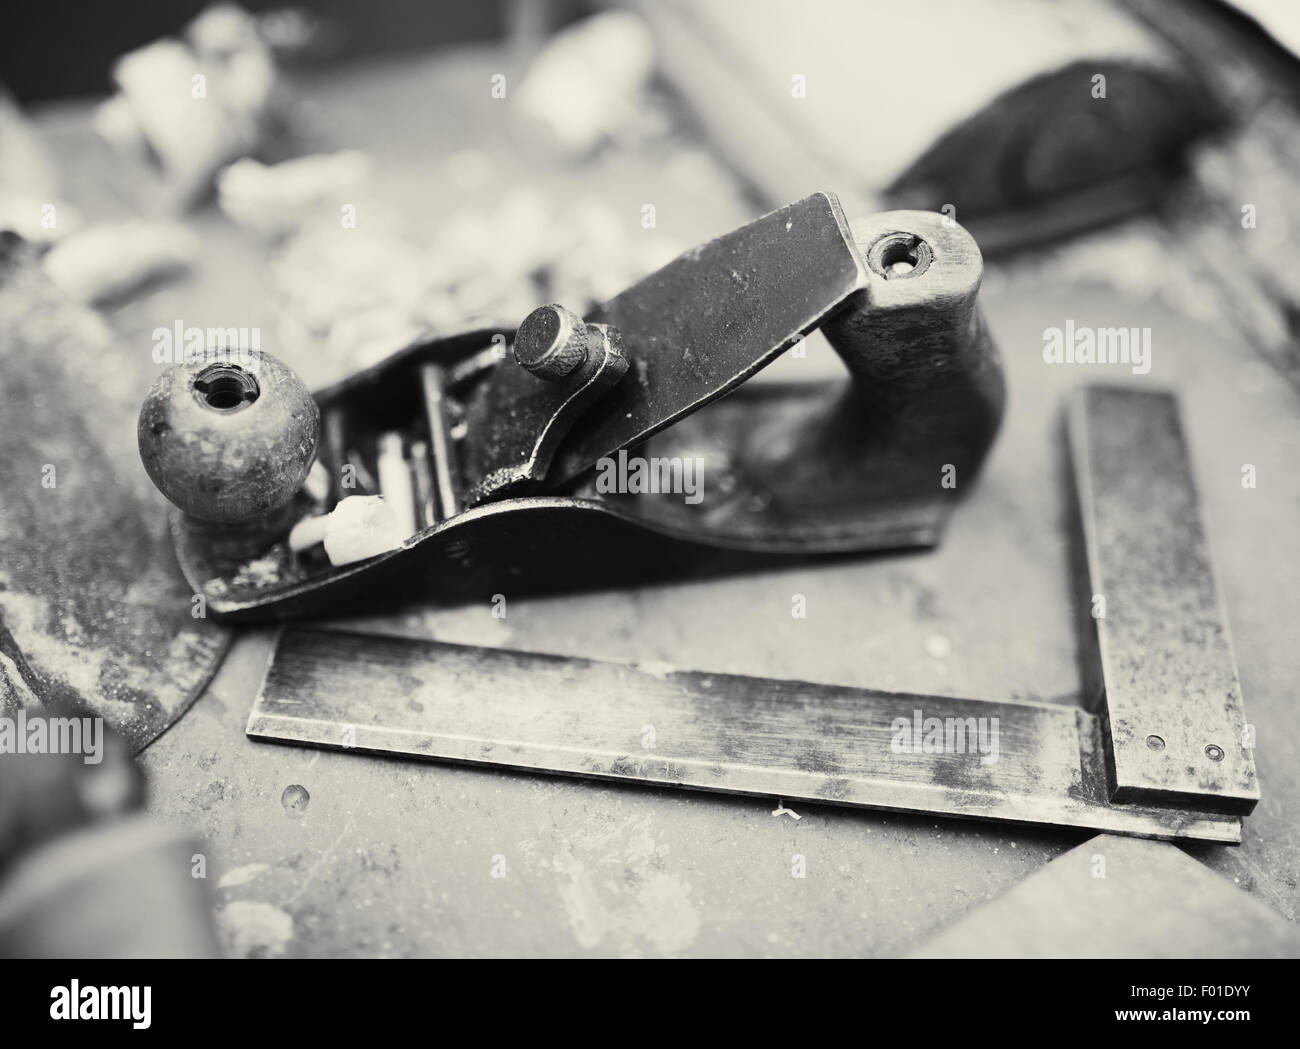 Schreibtisch eines Schreiners mit einigen Werkzeugen, getönte bw Foto Stockfoto